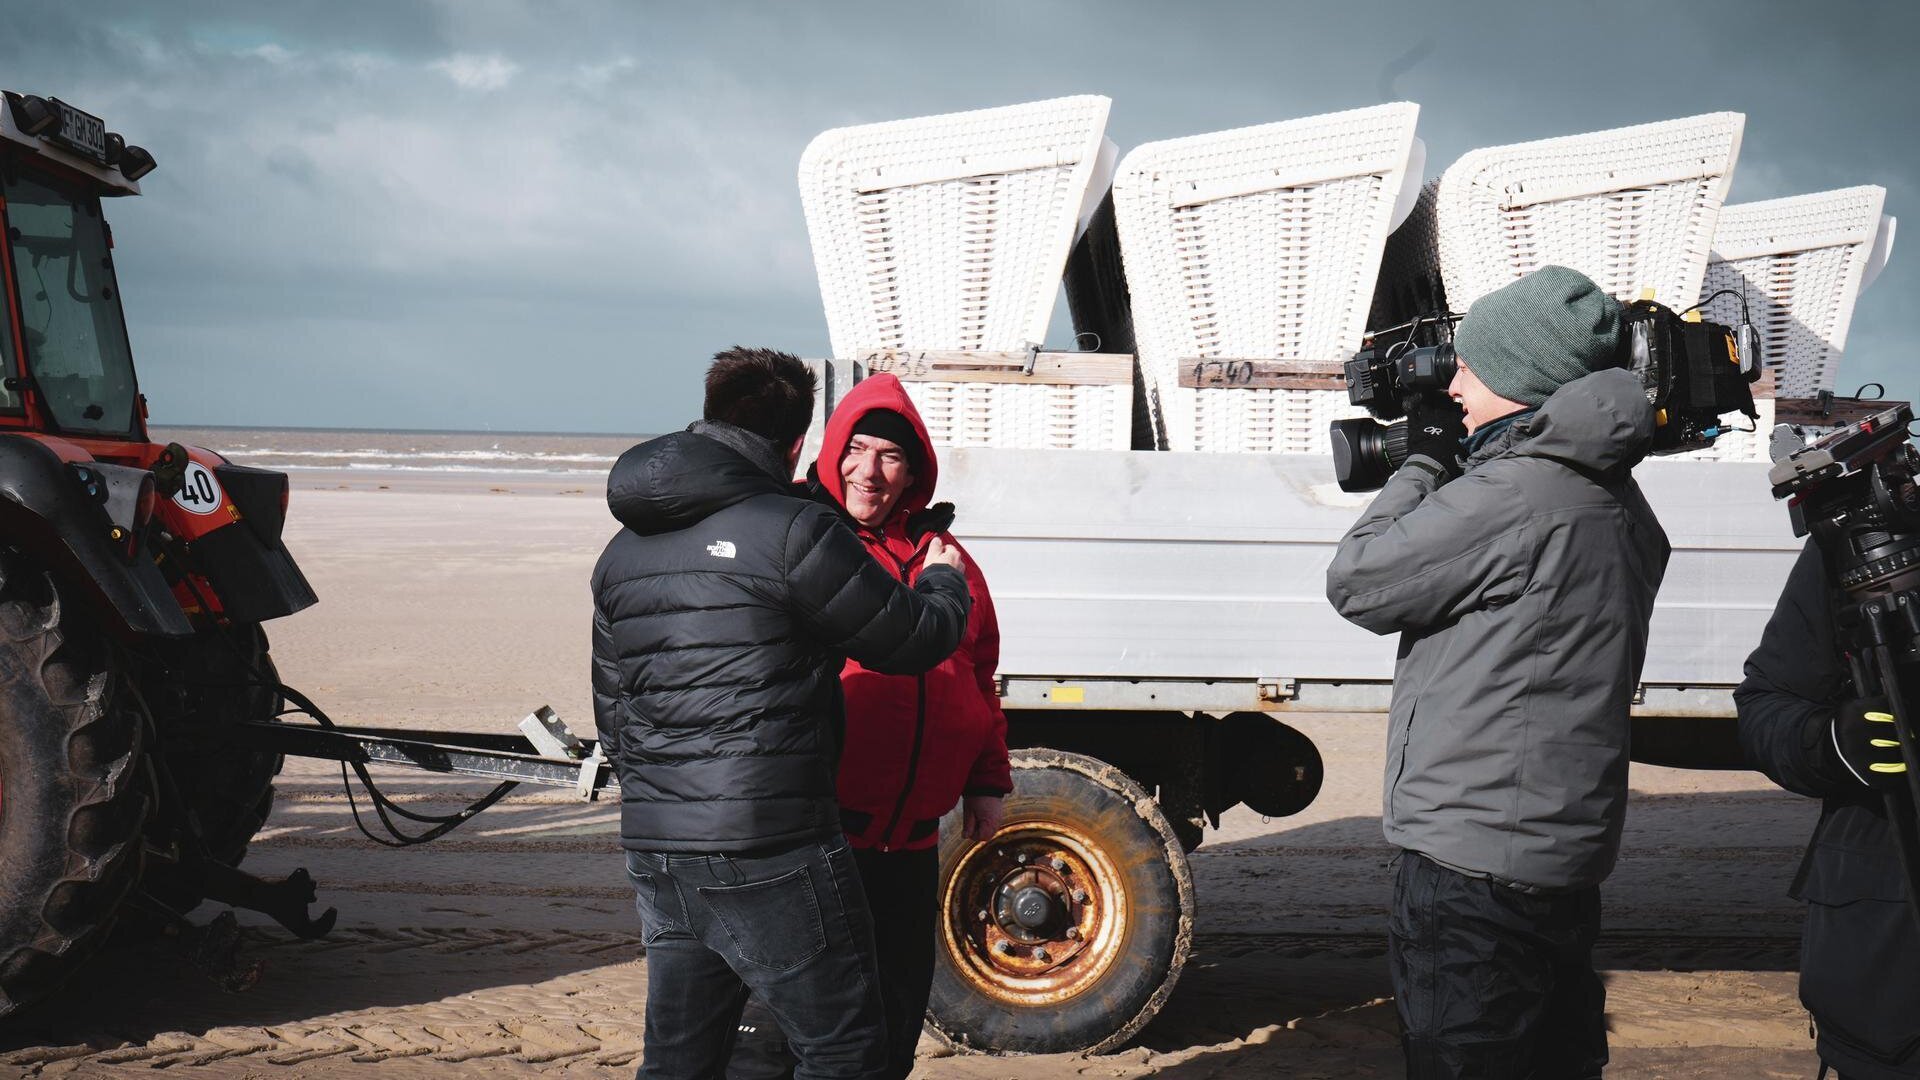 Interview eines Strandmitarbeiters vor einem Anhänger mit Strandkörben